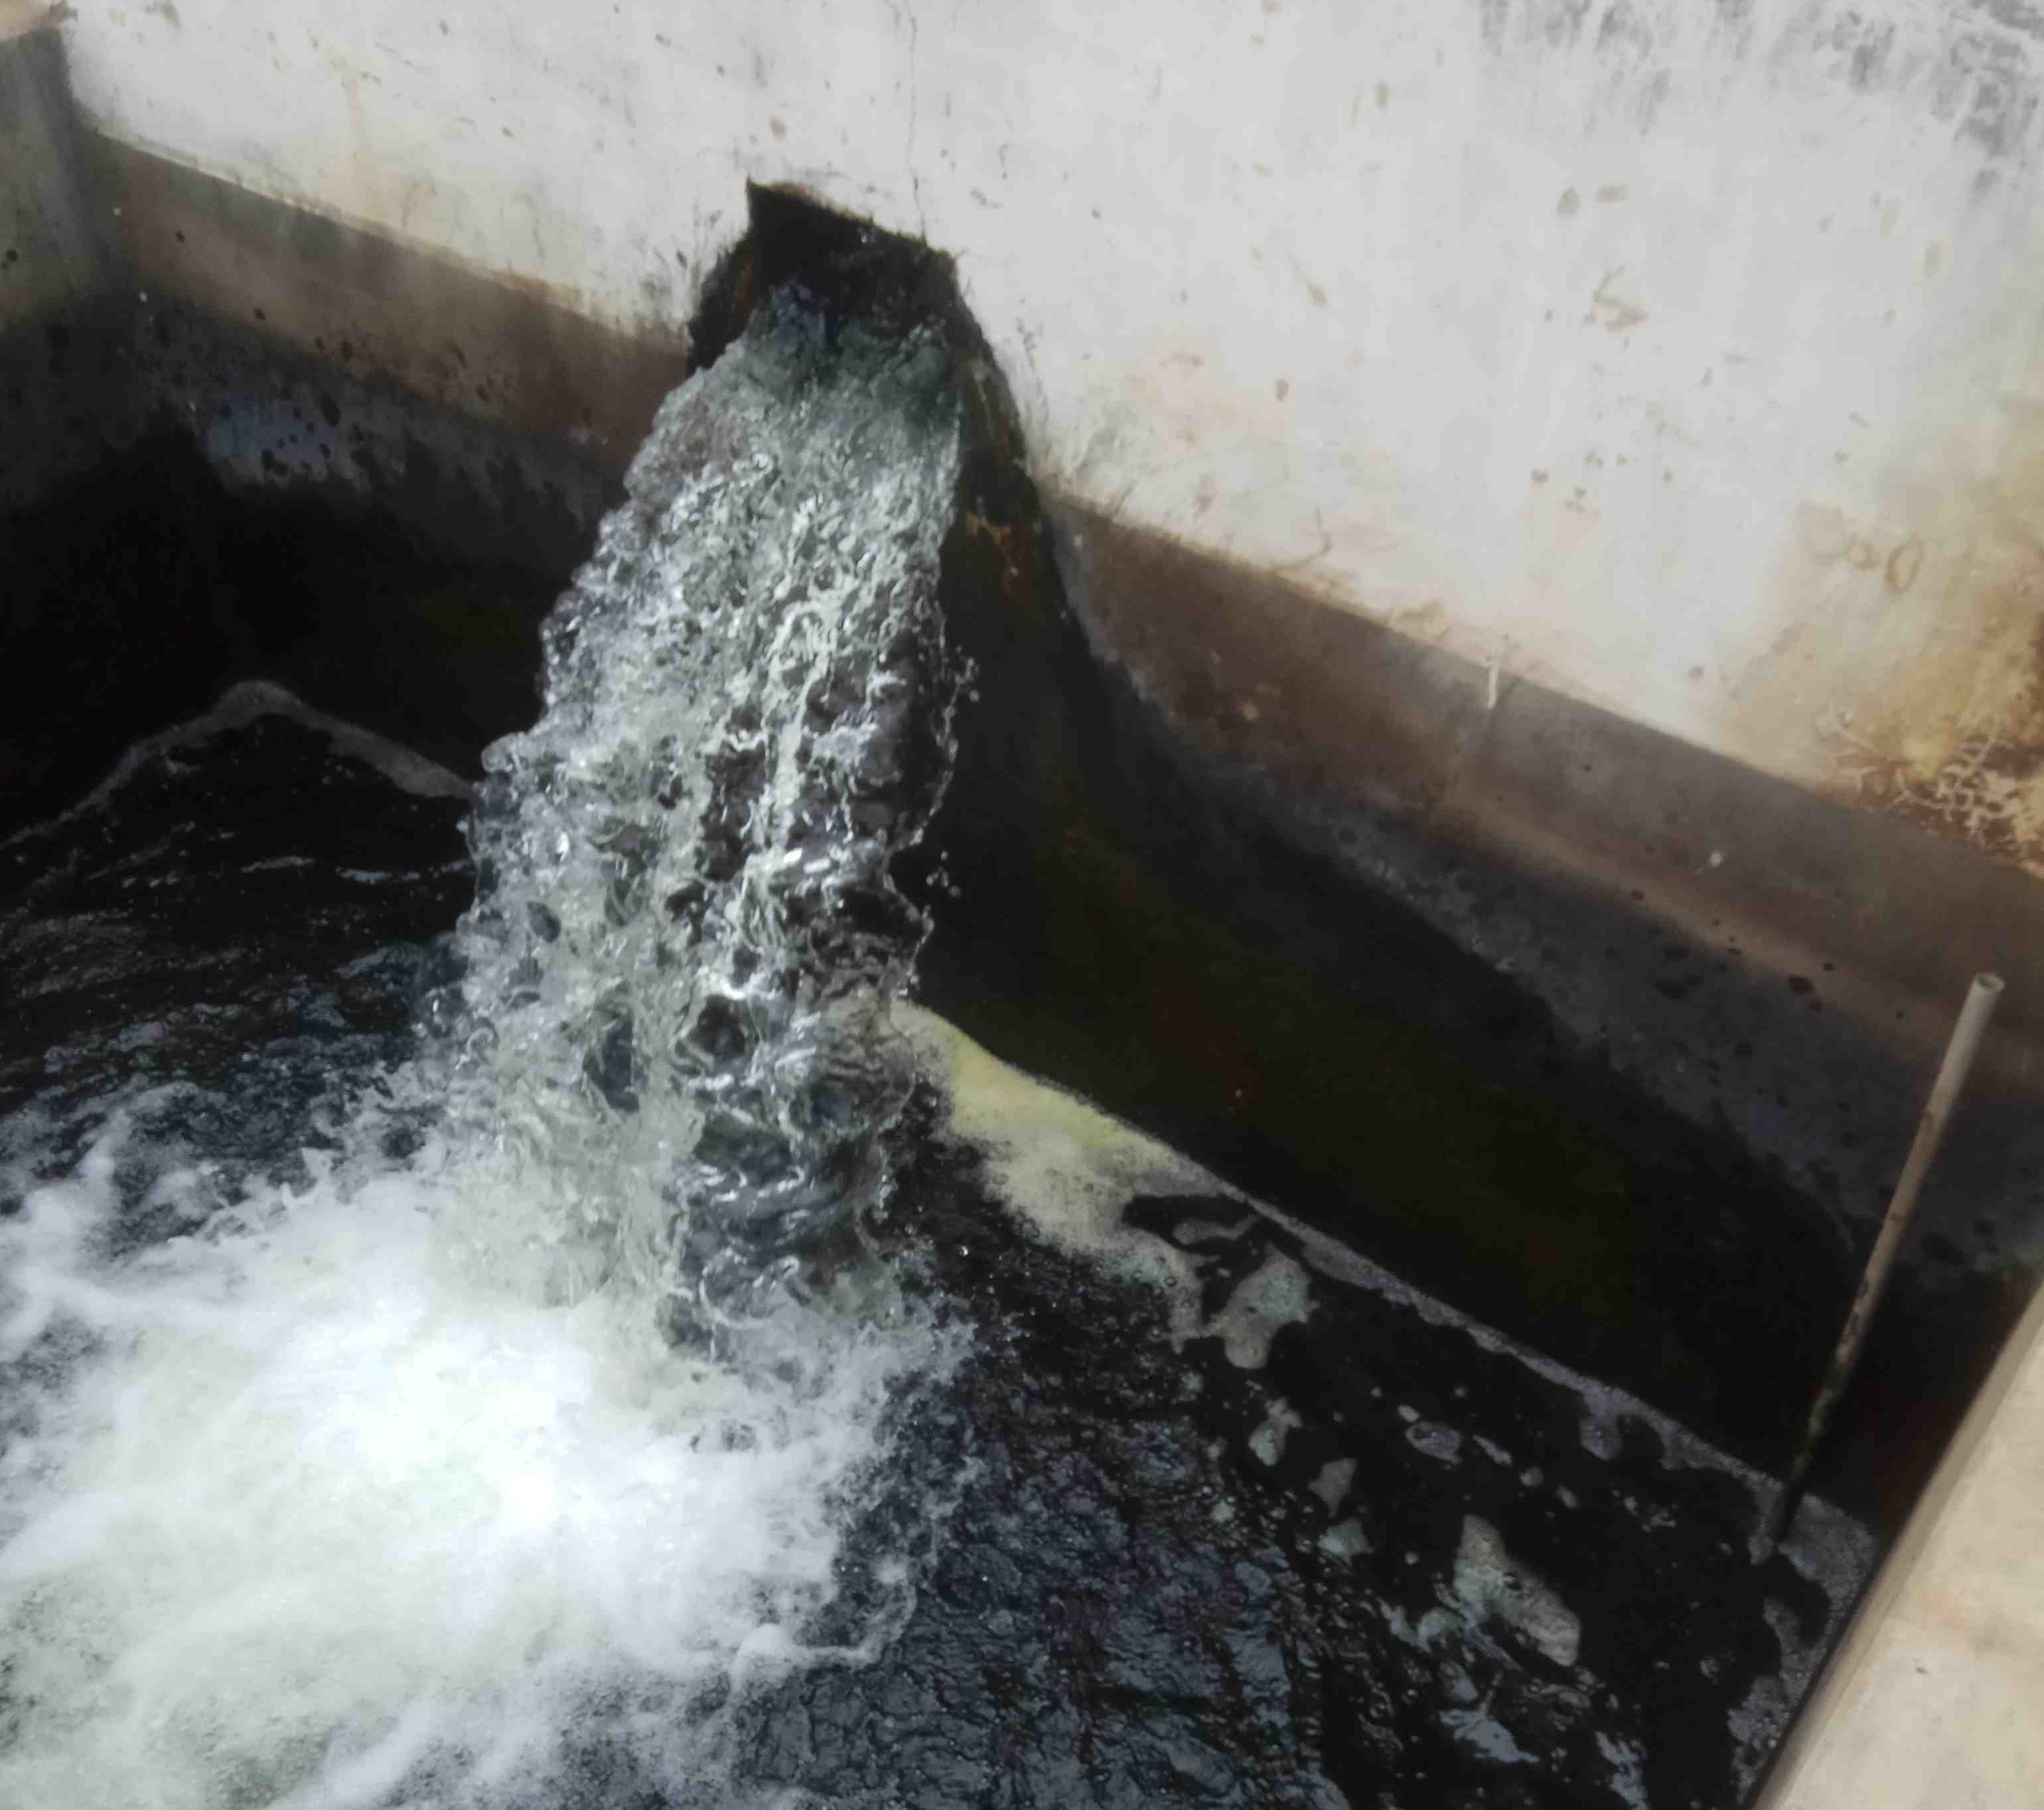 Bể đựng nước tại nhà máy xí nghiệp nước Thái Bình rêu mọc xanh đá lọc chuyển màu đen